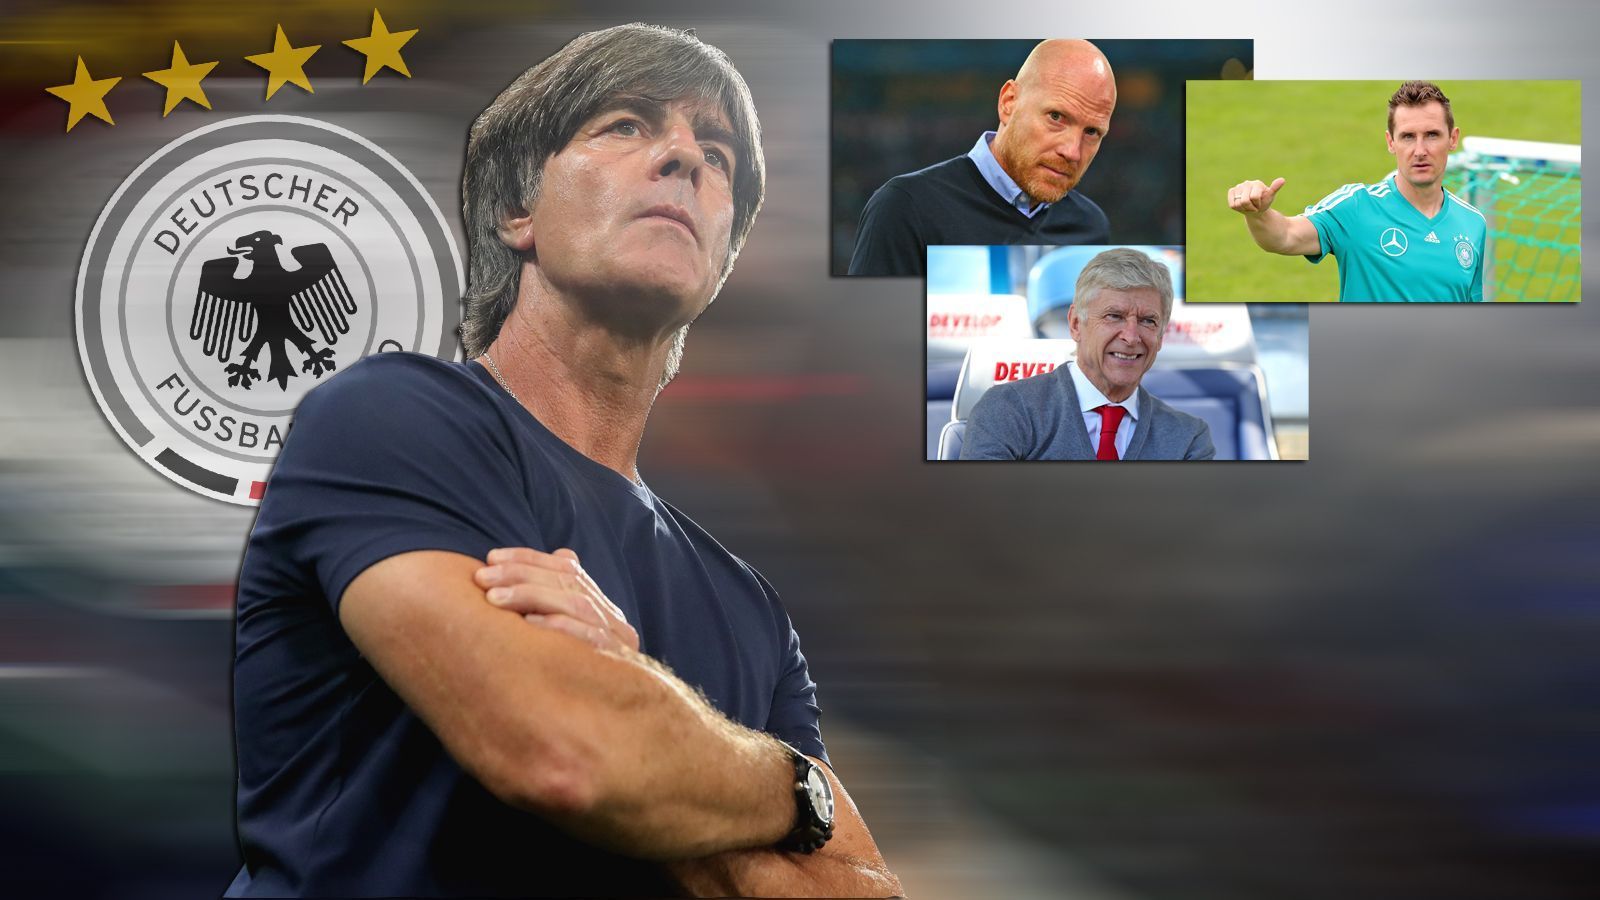 
                <strong>Wenn Löw geht: Wer könnte neuer Bundestrainer werden?</strong><br>
                Joachim Löw lässt nach der WM-Blamage seine Zukunft offen, der DFB-Präsident hat eine Entscheidung vertagt. Doch sind überhaupt adäquate Nachfolger auf dem Markt? ran.de blickt auf die möglichen Kandidaten.
              